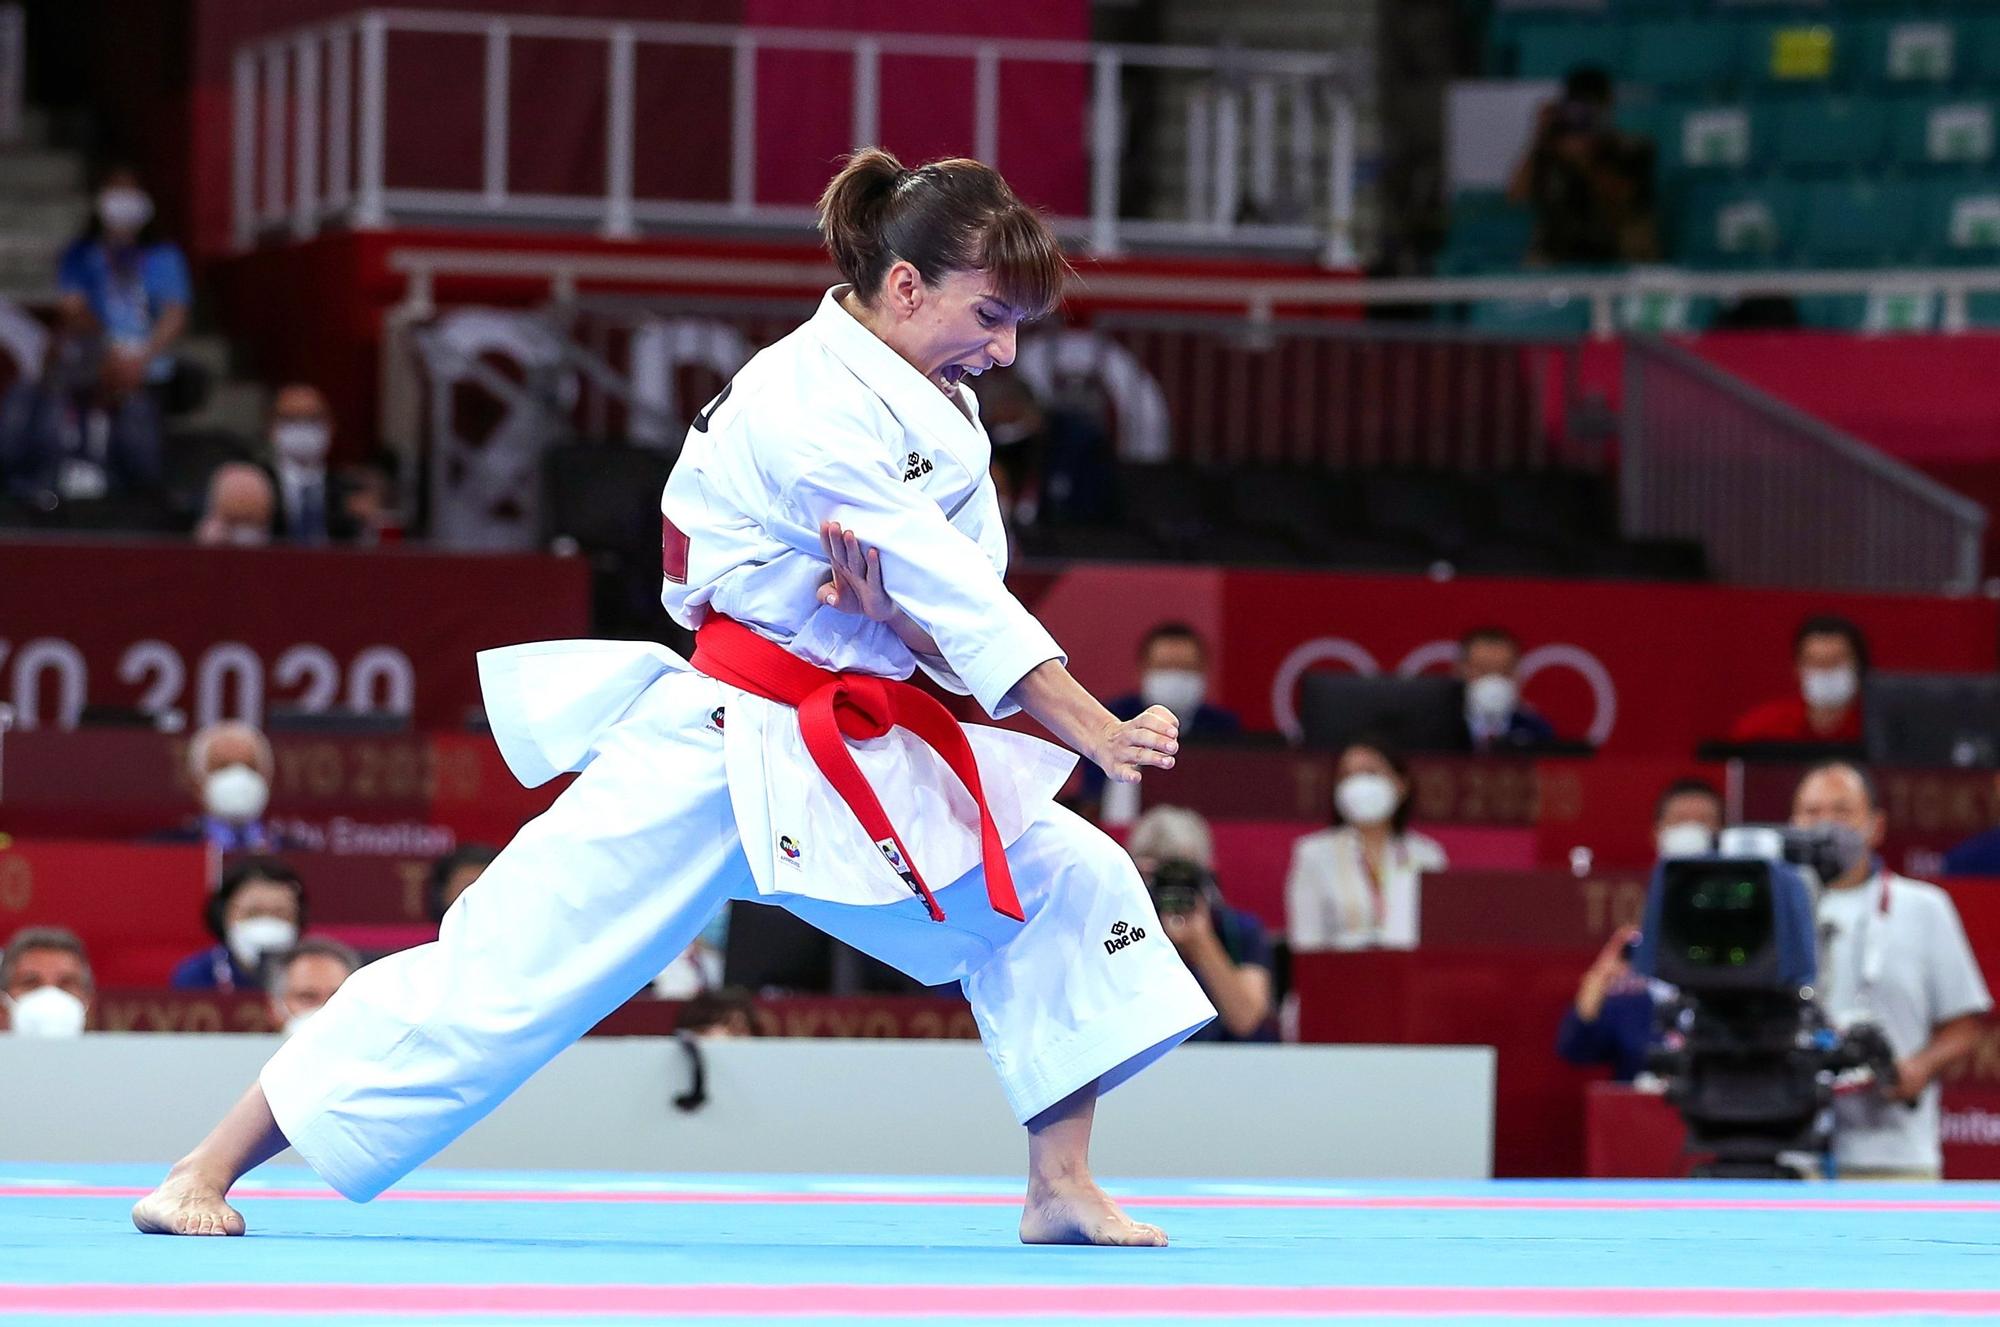 Sandra Sánchez, medalla de oro en kárate en Tokio 2020